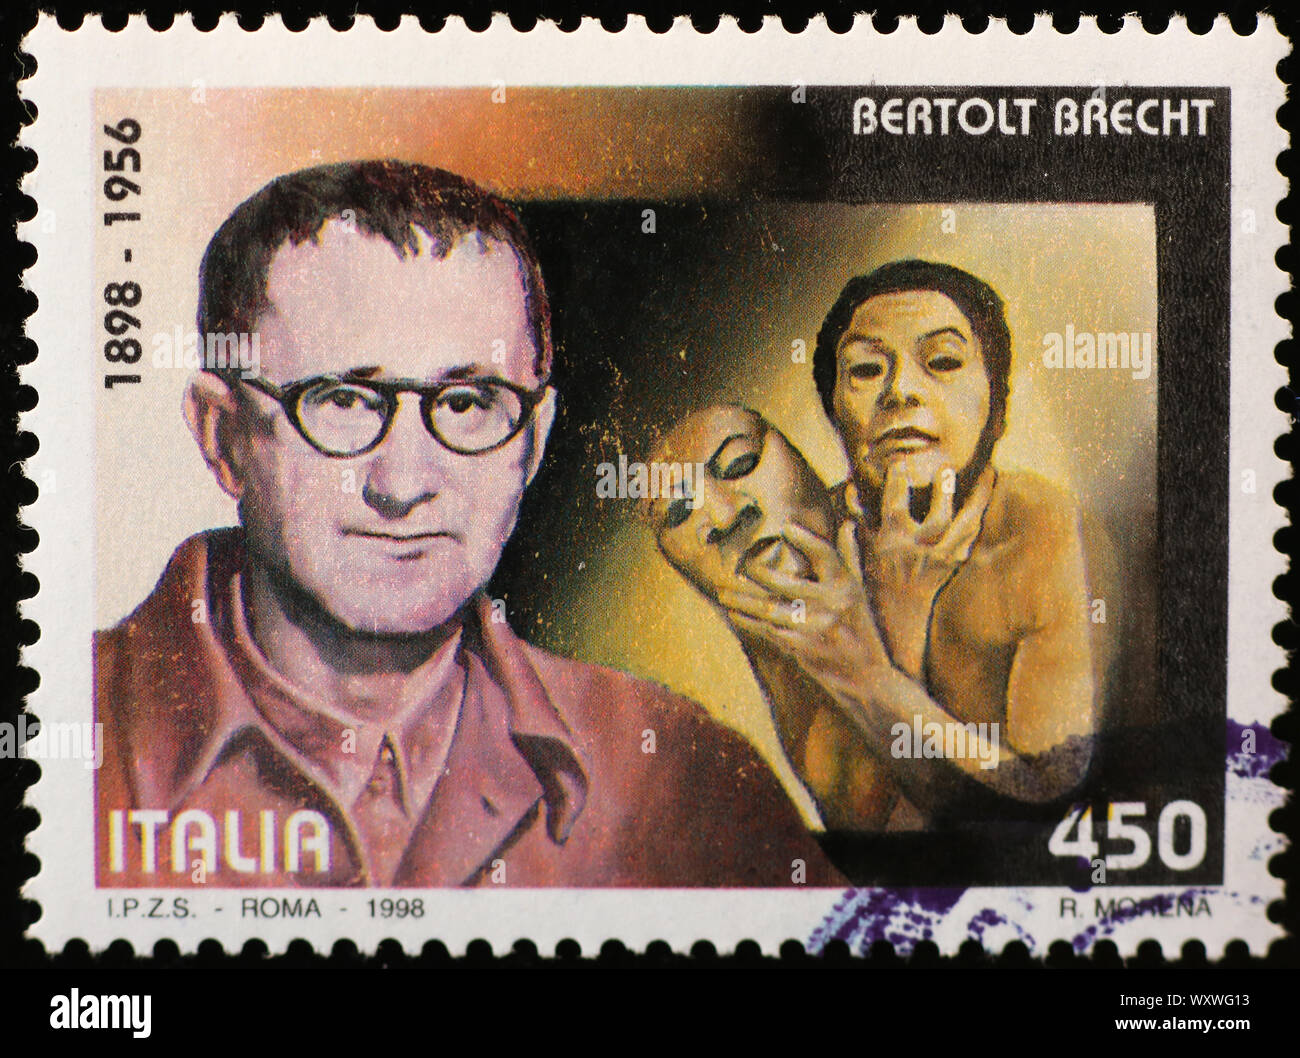 Bertolt Brecht on italian postage stamp Stock Photo